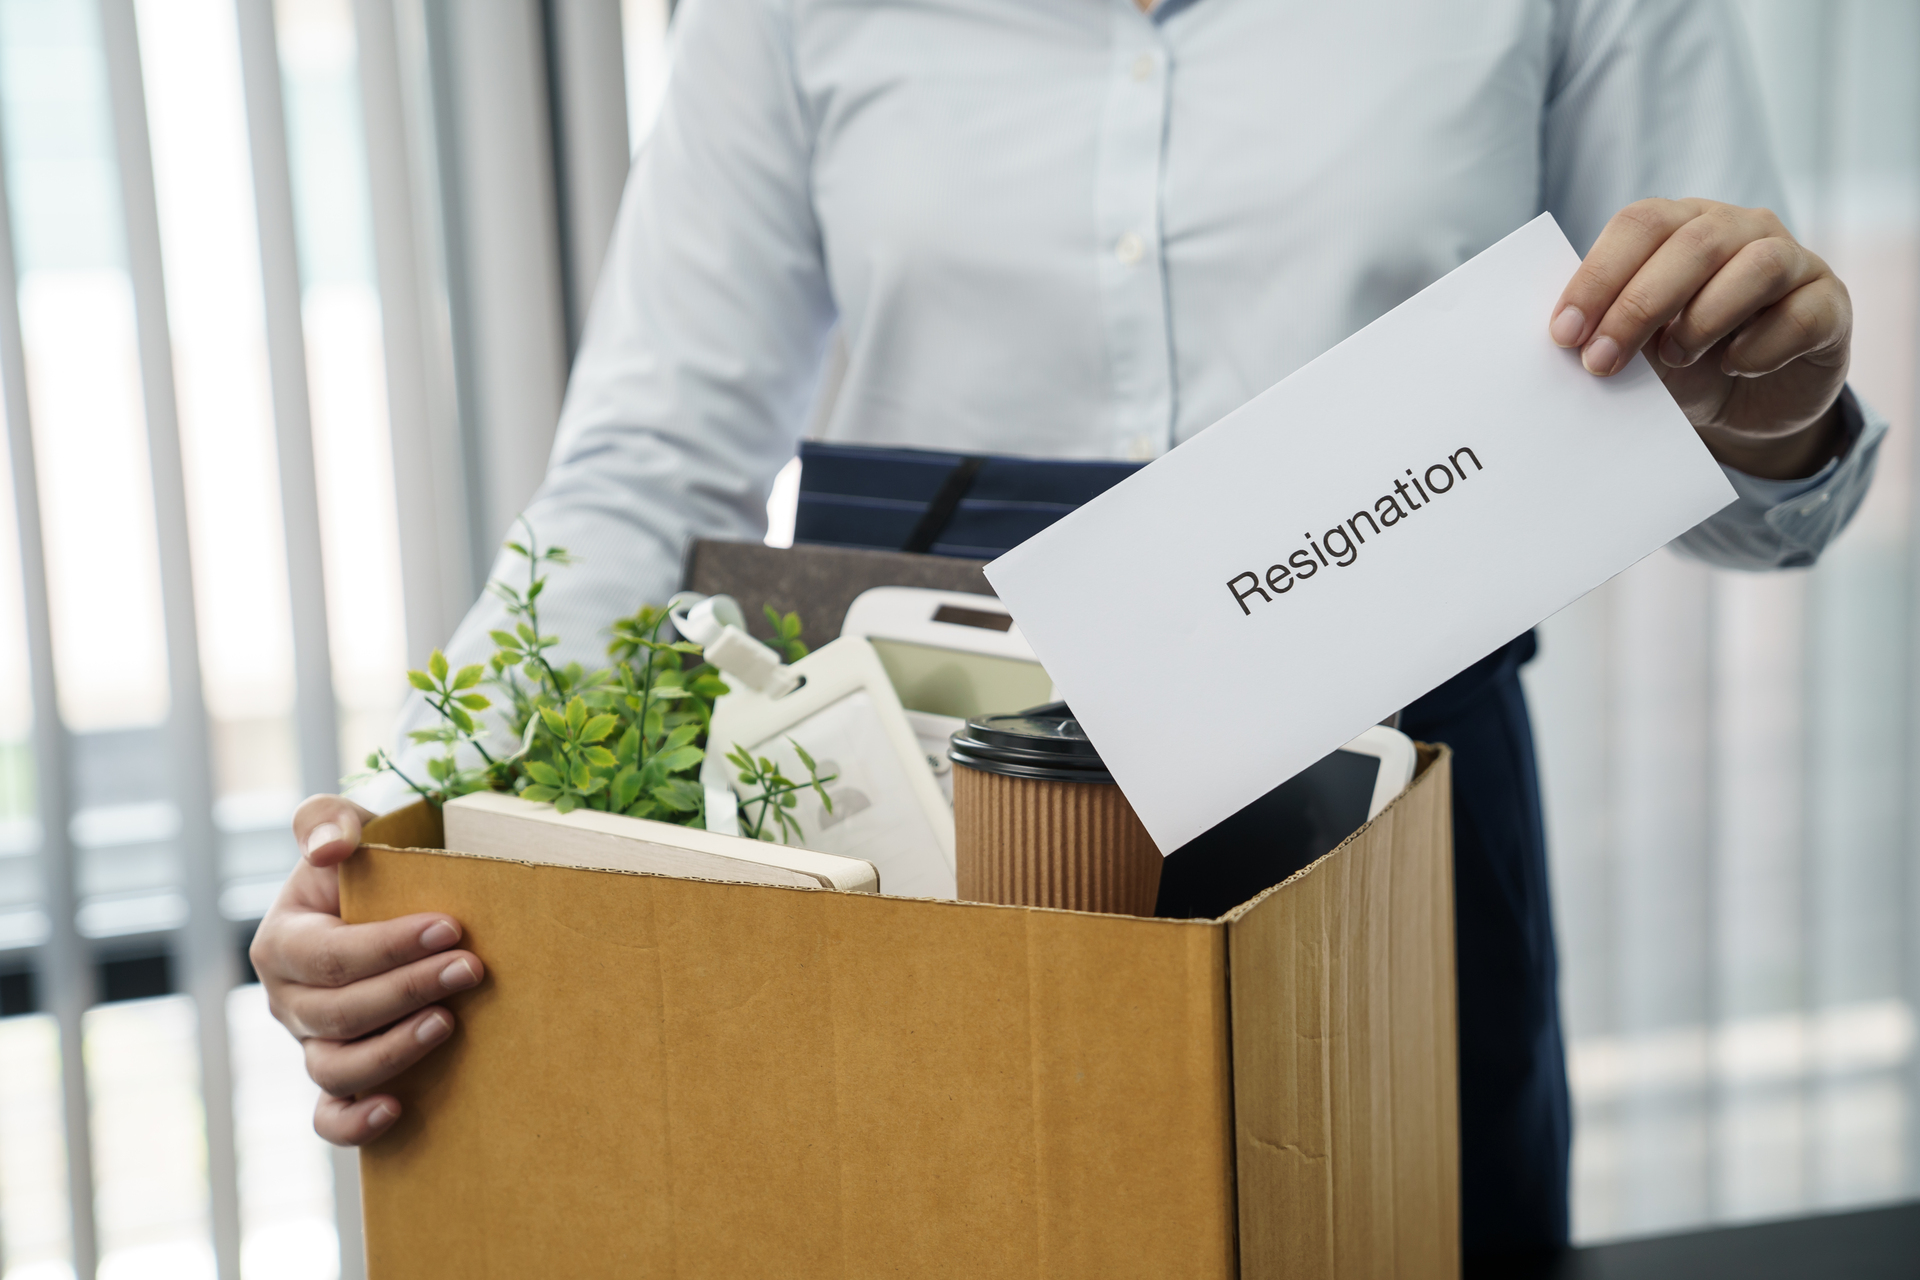 Kobieta wyprowadzająca się z biura z pudłami i białą kratką w ręce z napisem "resignation"